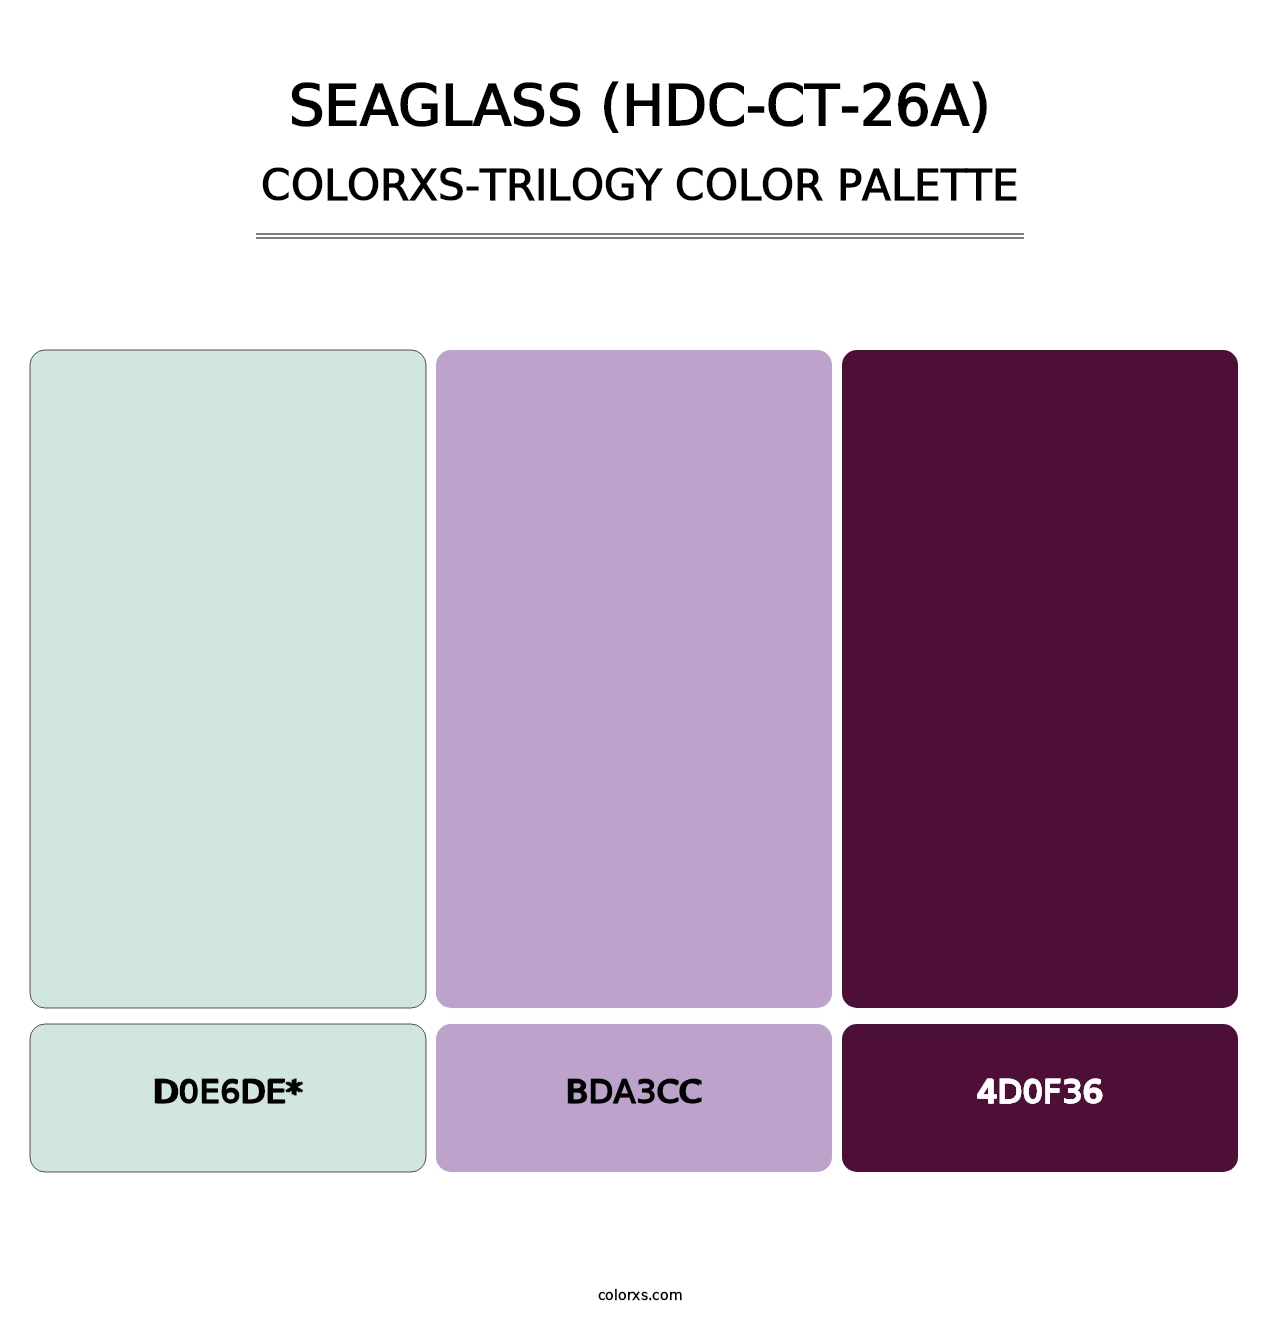 Seaglass (HDC-CT-26A) - Colorxs Trilogy Palette